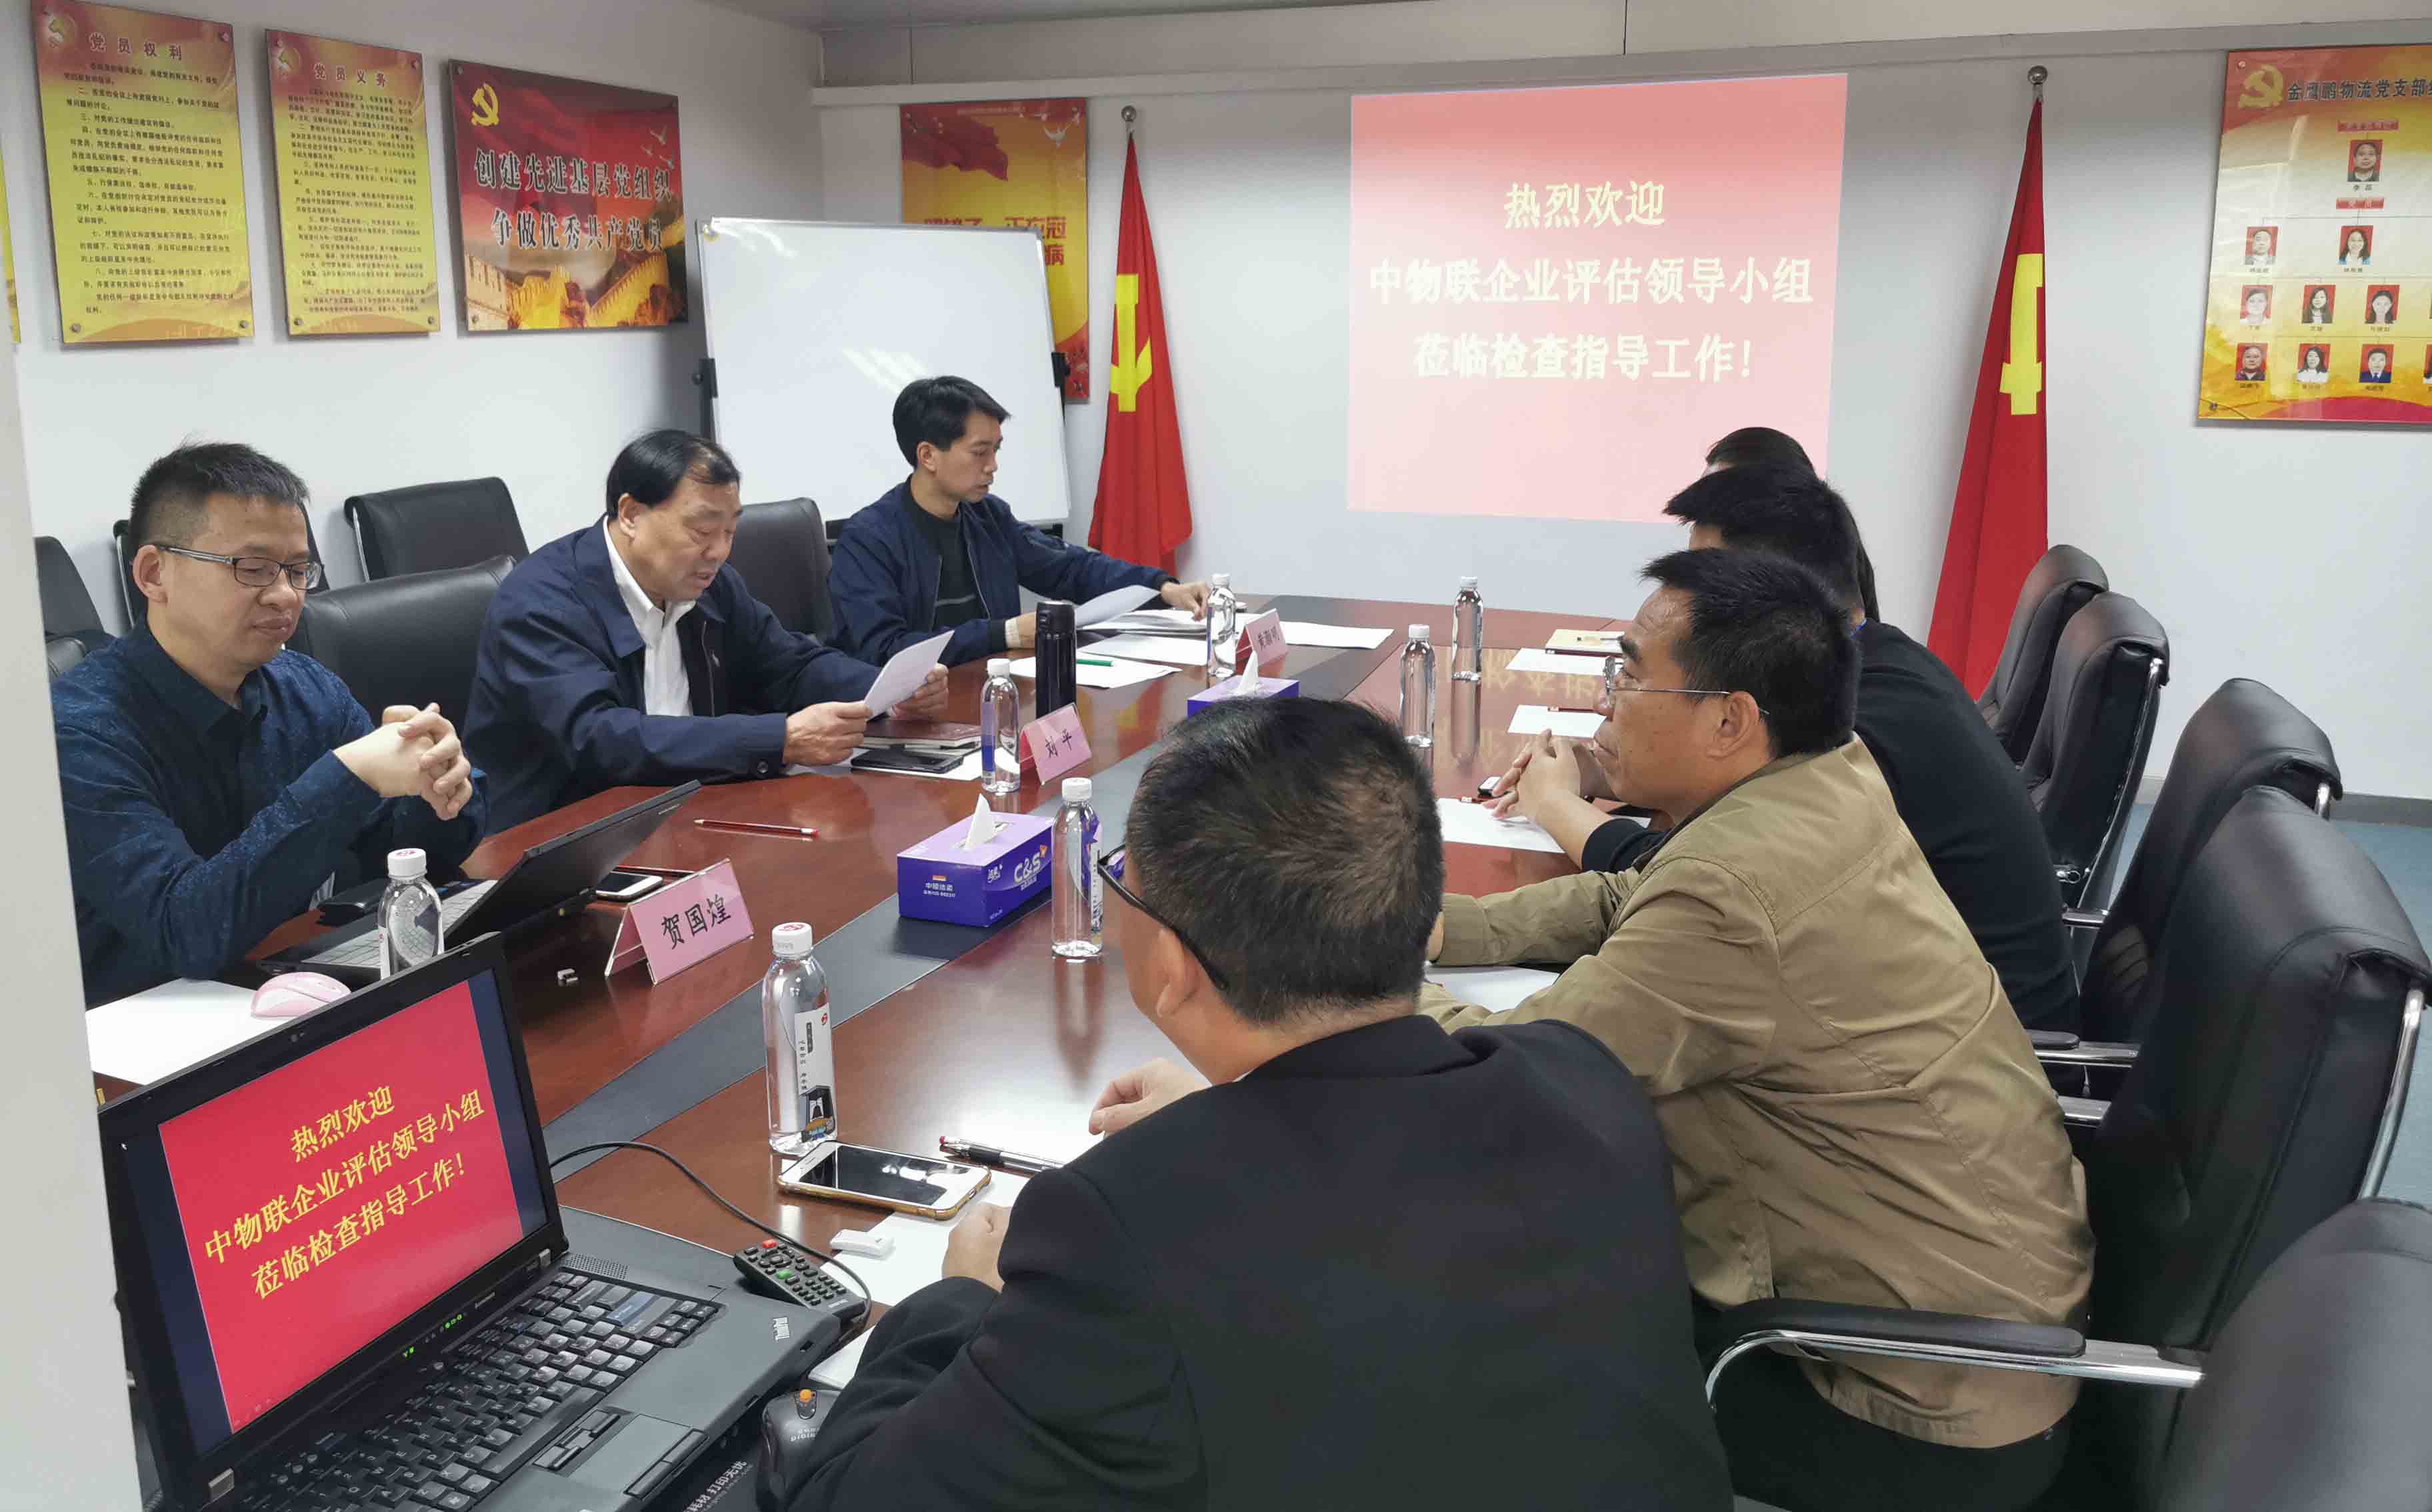 评估组在深圳市宏大供应链服务有限公司进行现场审核.jpg